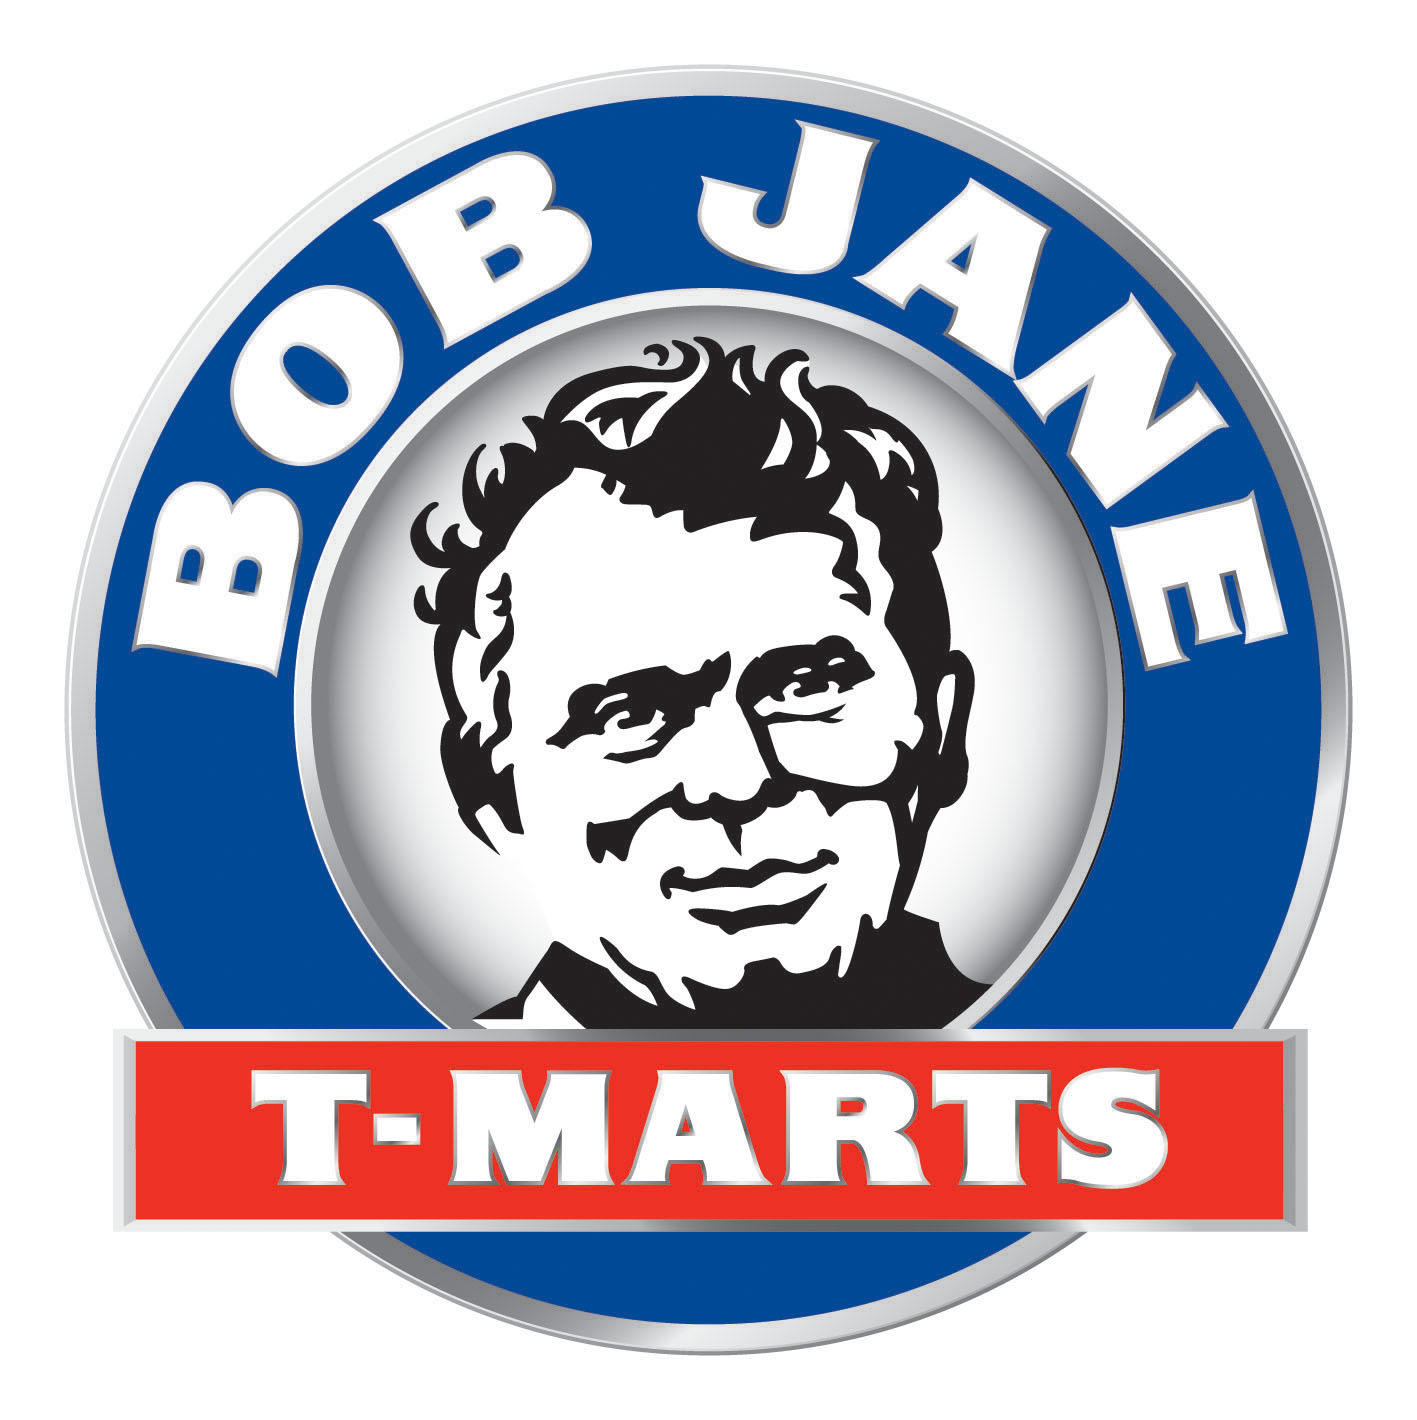 Images Bob Jane T-Marts Bunbury